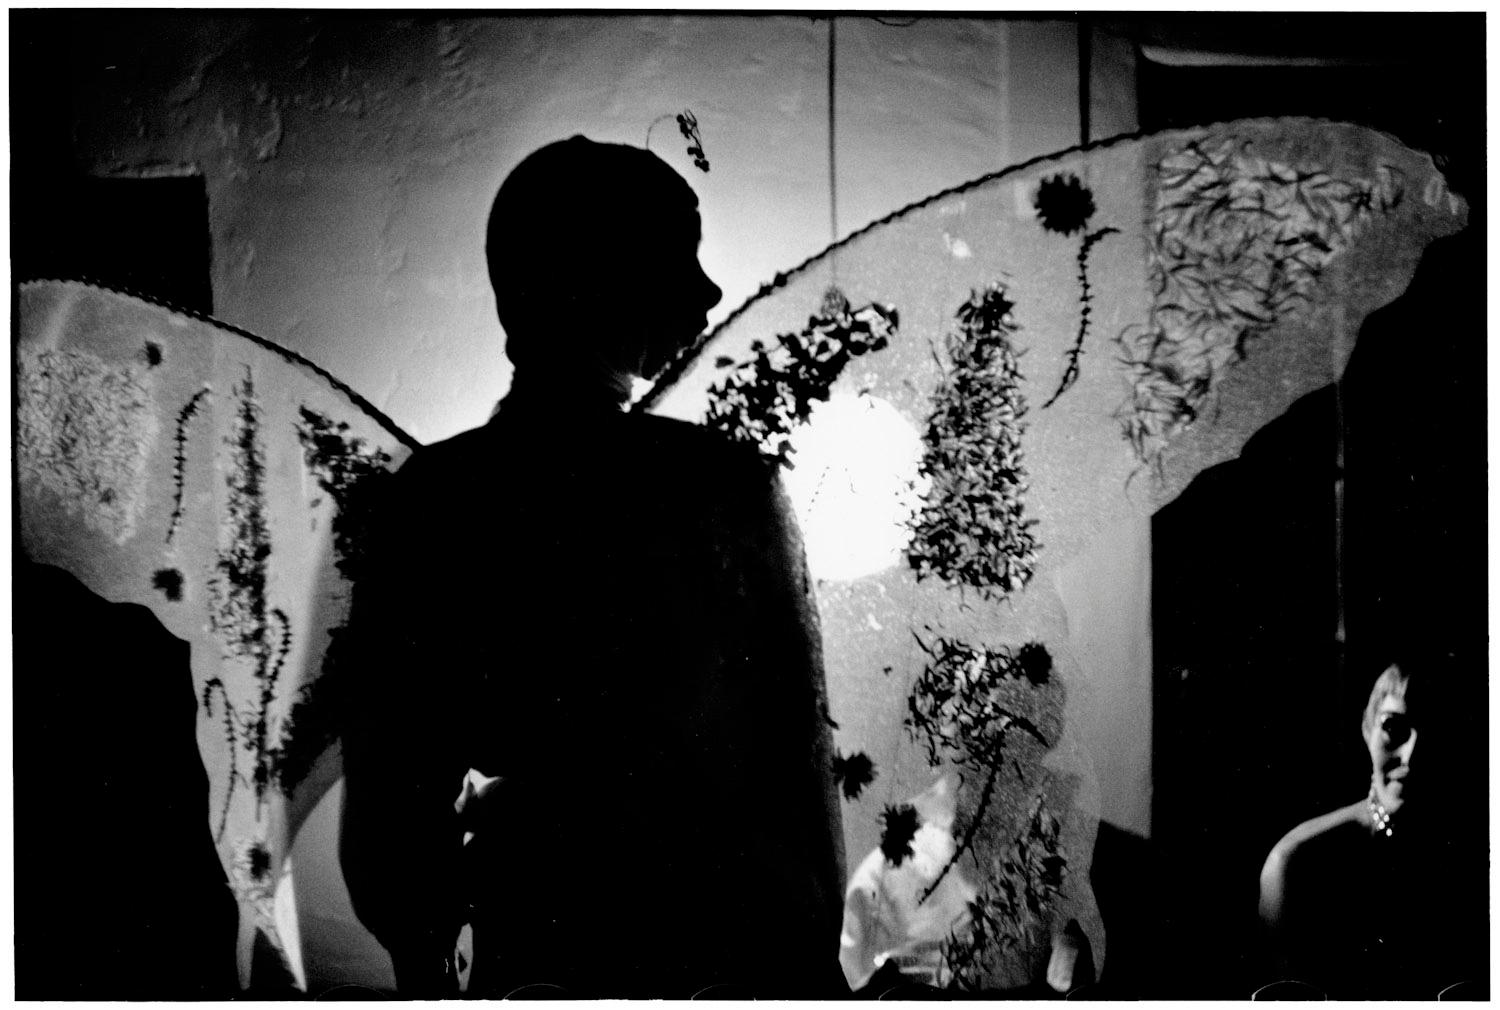 USA, Los Angeles, Kalifornien 1955 - Elliott Erwitt (Schwarz-Weiß-Fotografie)
Signiert, betitelt und datiert auf dem beiliegenden Etikett des Künstlers
Silbergelatineabzug, später gedruckt

Erhältlich in vier Größen:
11 x 14 Zoll
16 x 20 Zoll
20 x